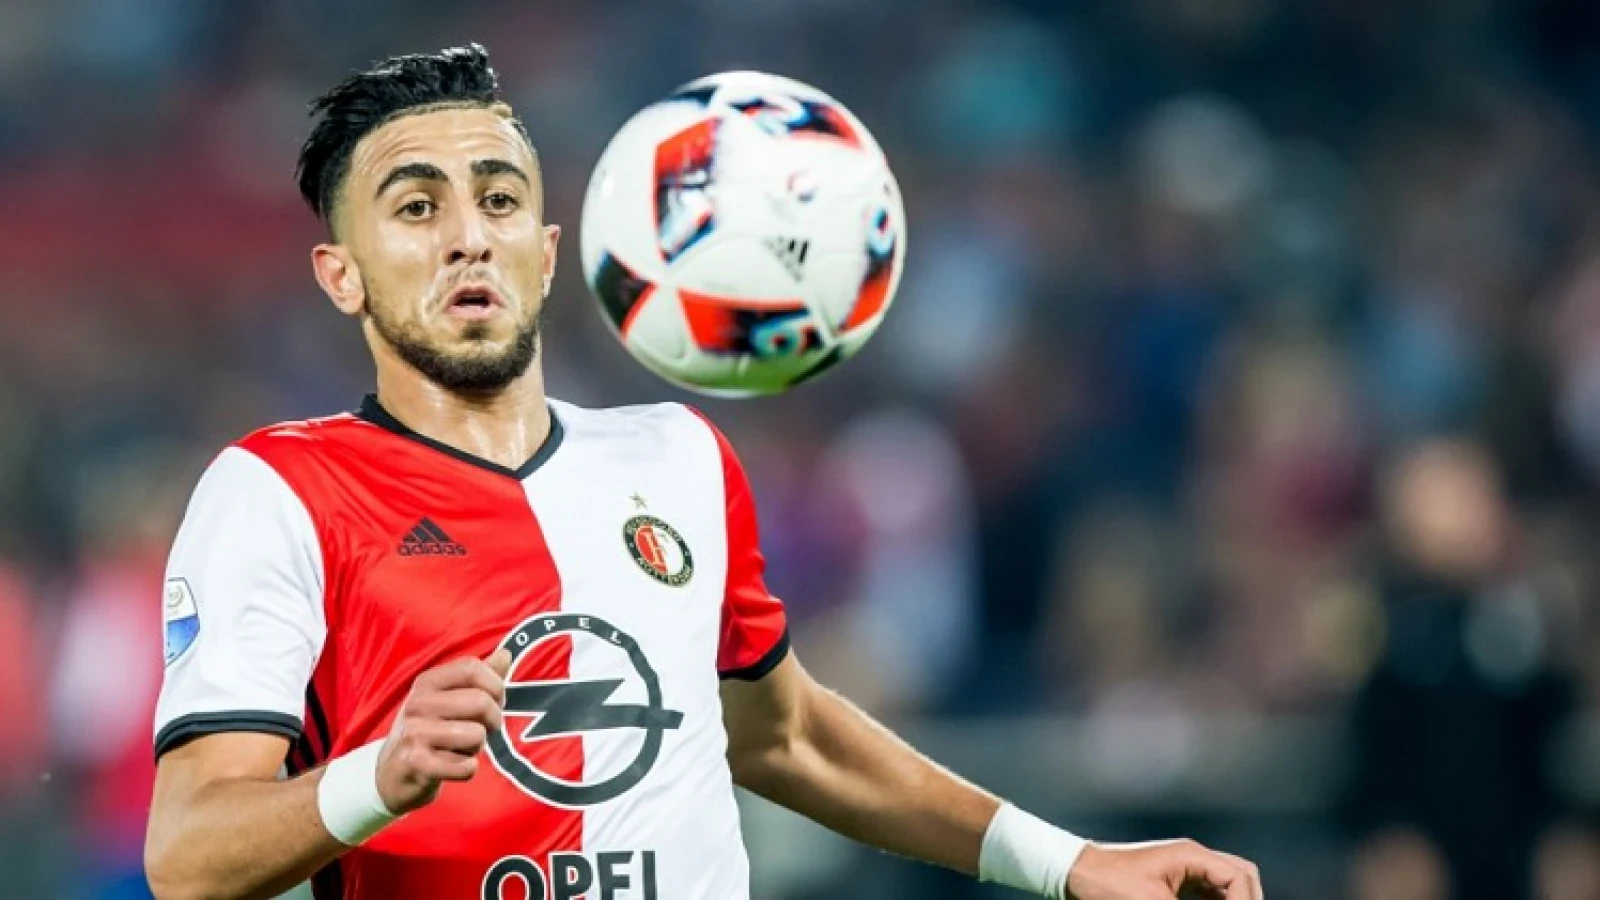 Bilal wil mondjes snoeren: 'Die weten zeker dat Feyenoord gaat verliezen'